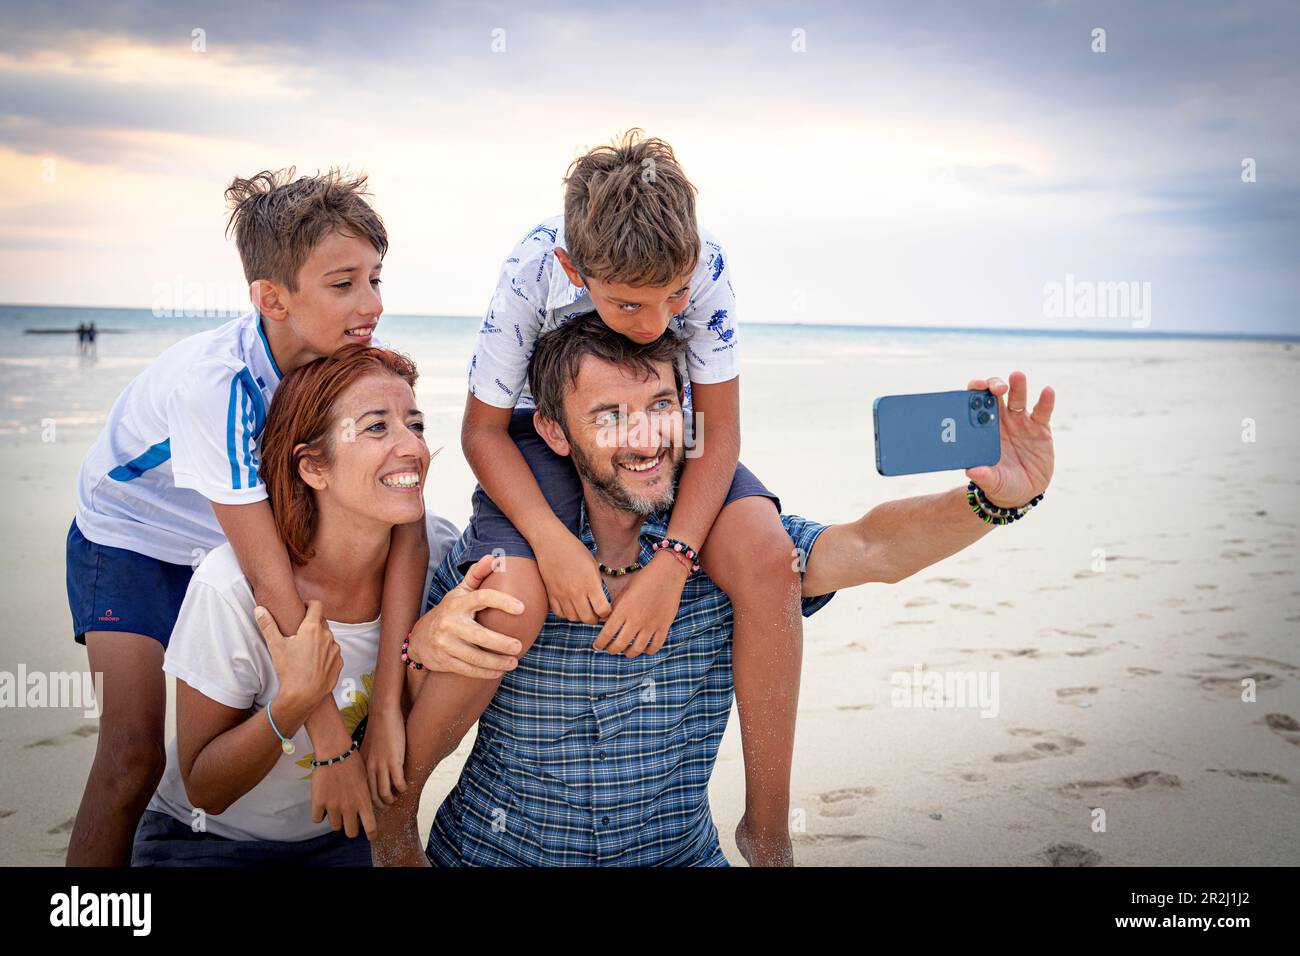 Famiglia felice con due ragazzi che scattano un selfie con smartphone su una spiaggia, Zanzibar, Tanzania, Africa orientale, Africa Foto Stock